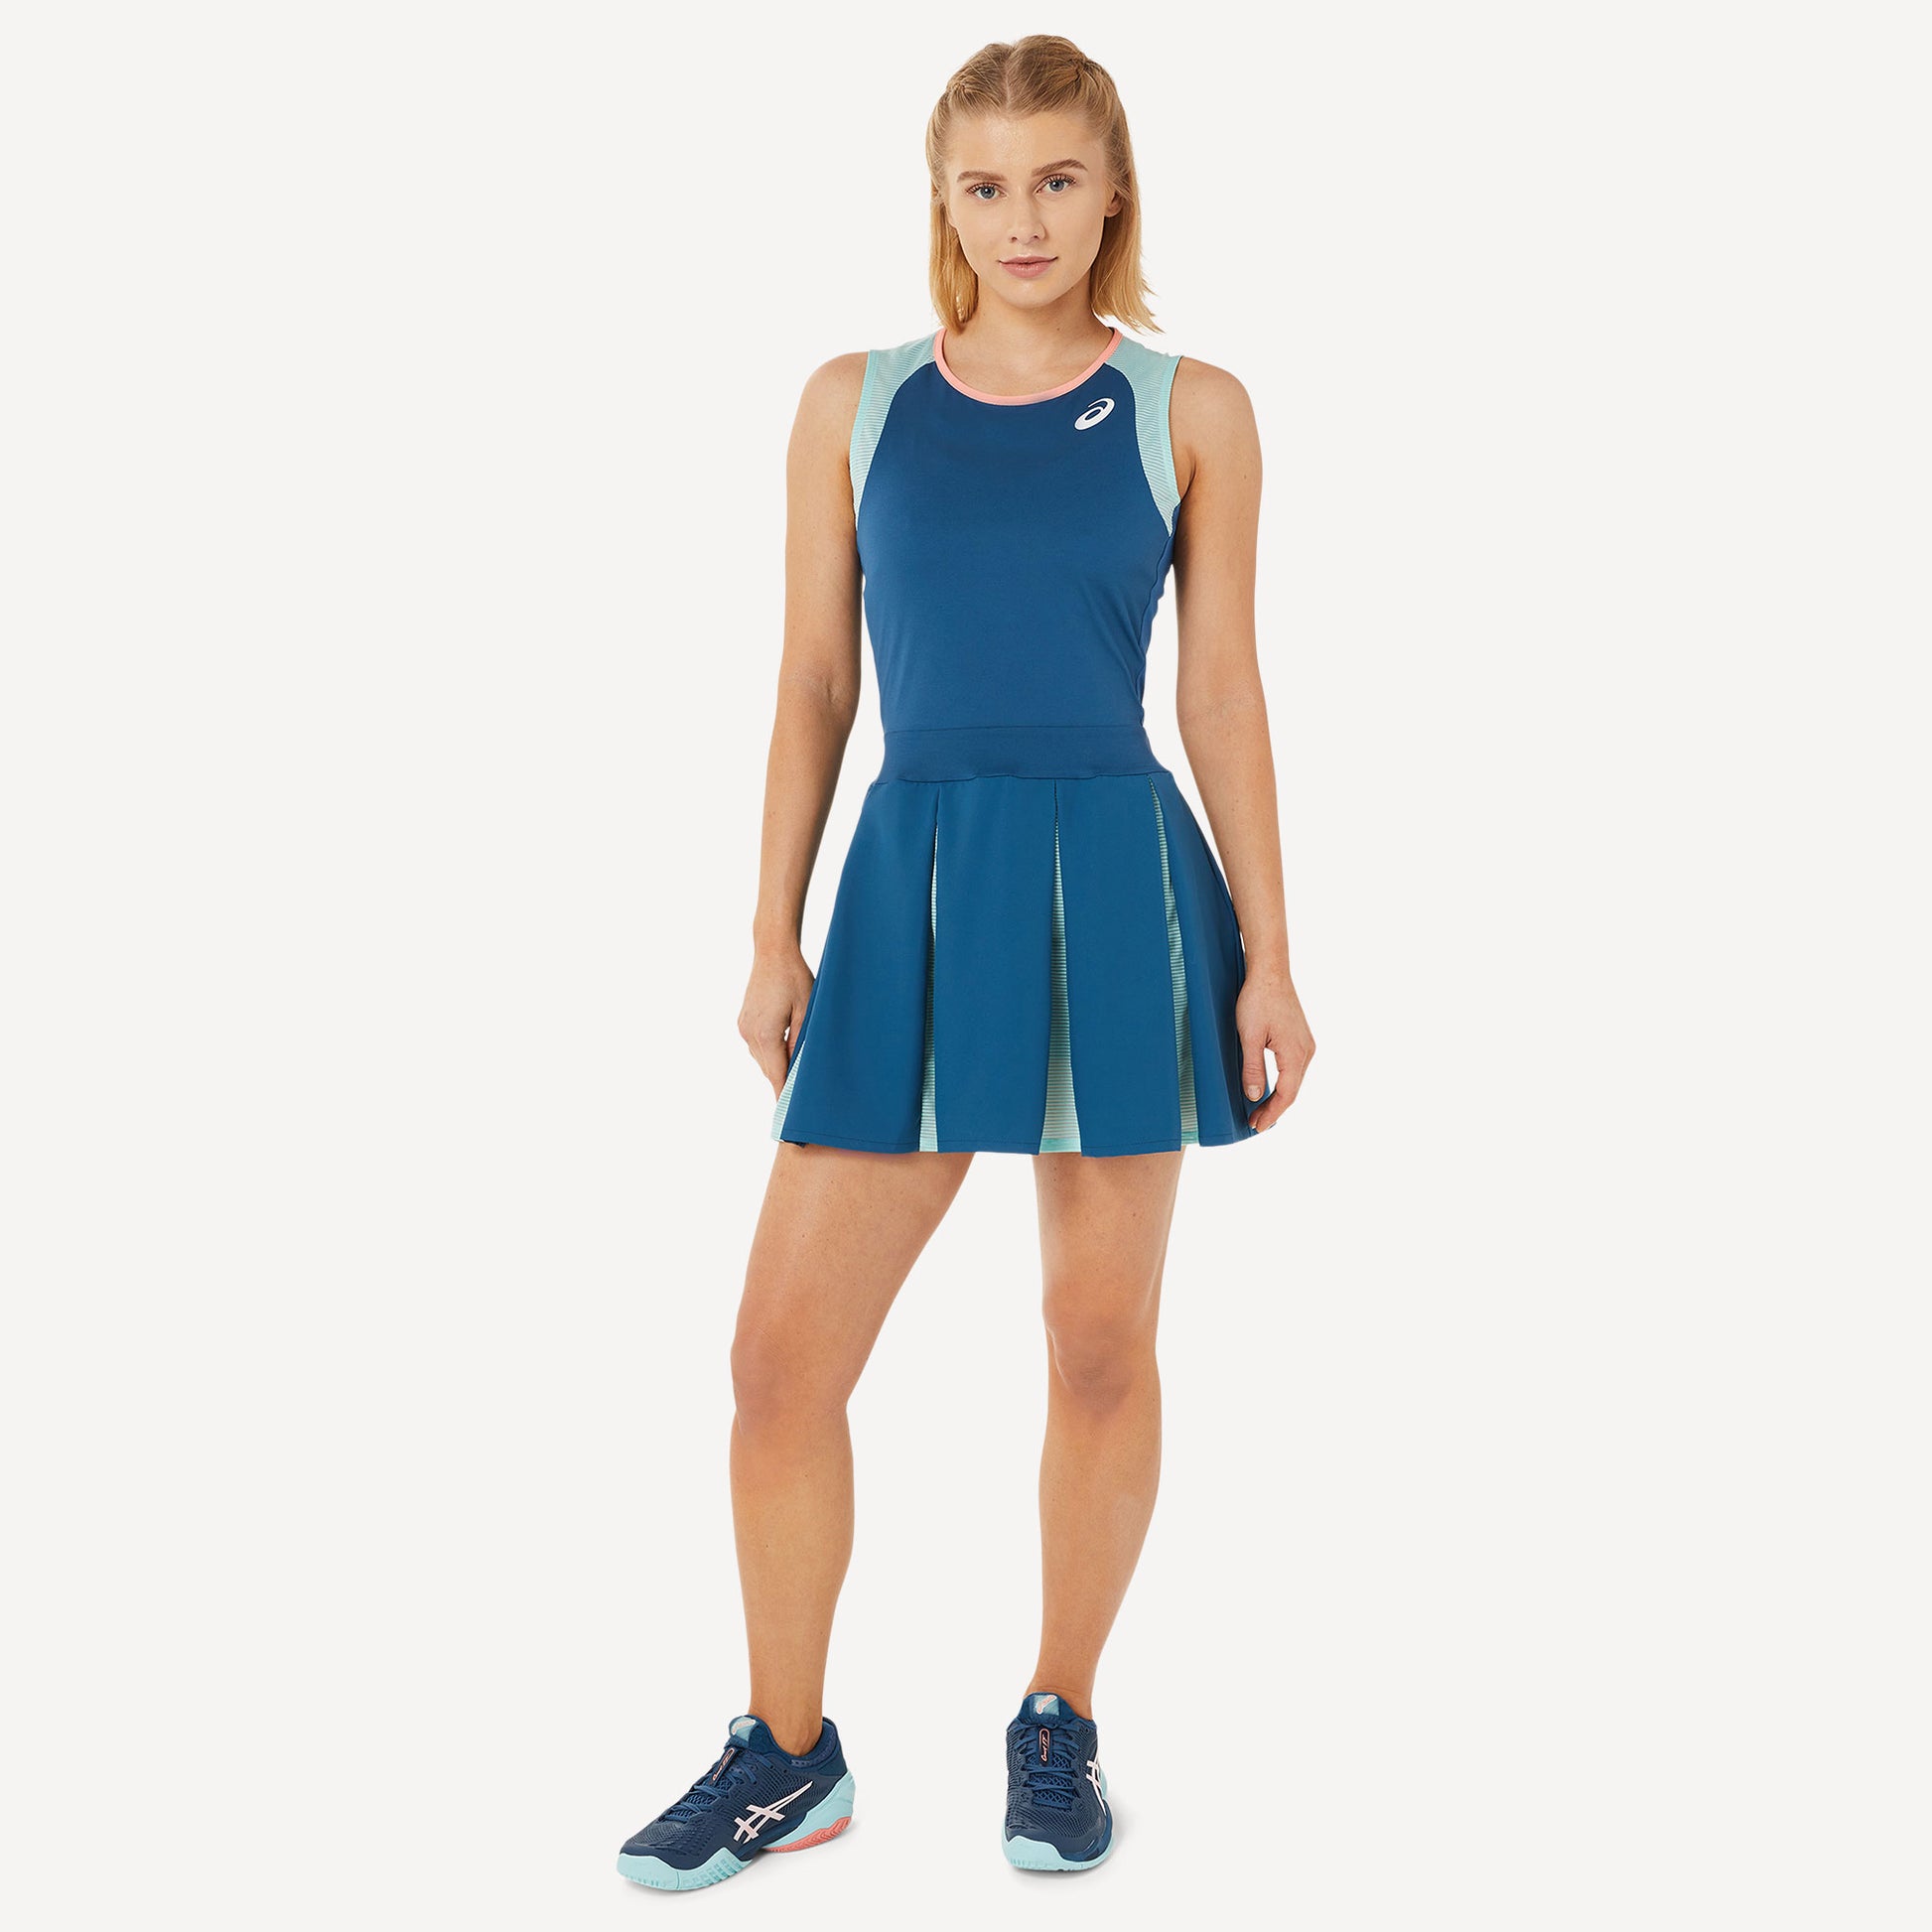 ASICS Match Women's Tennis Dress Blue (1)